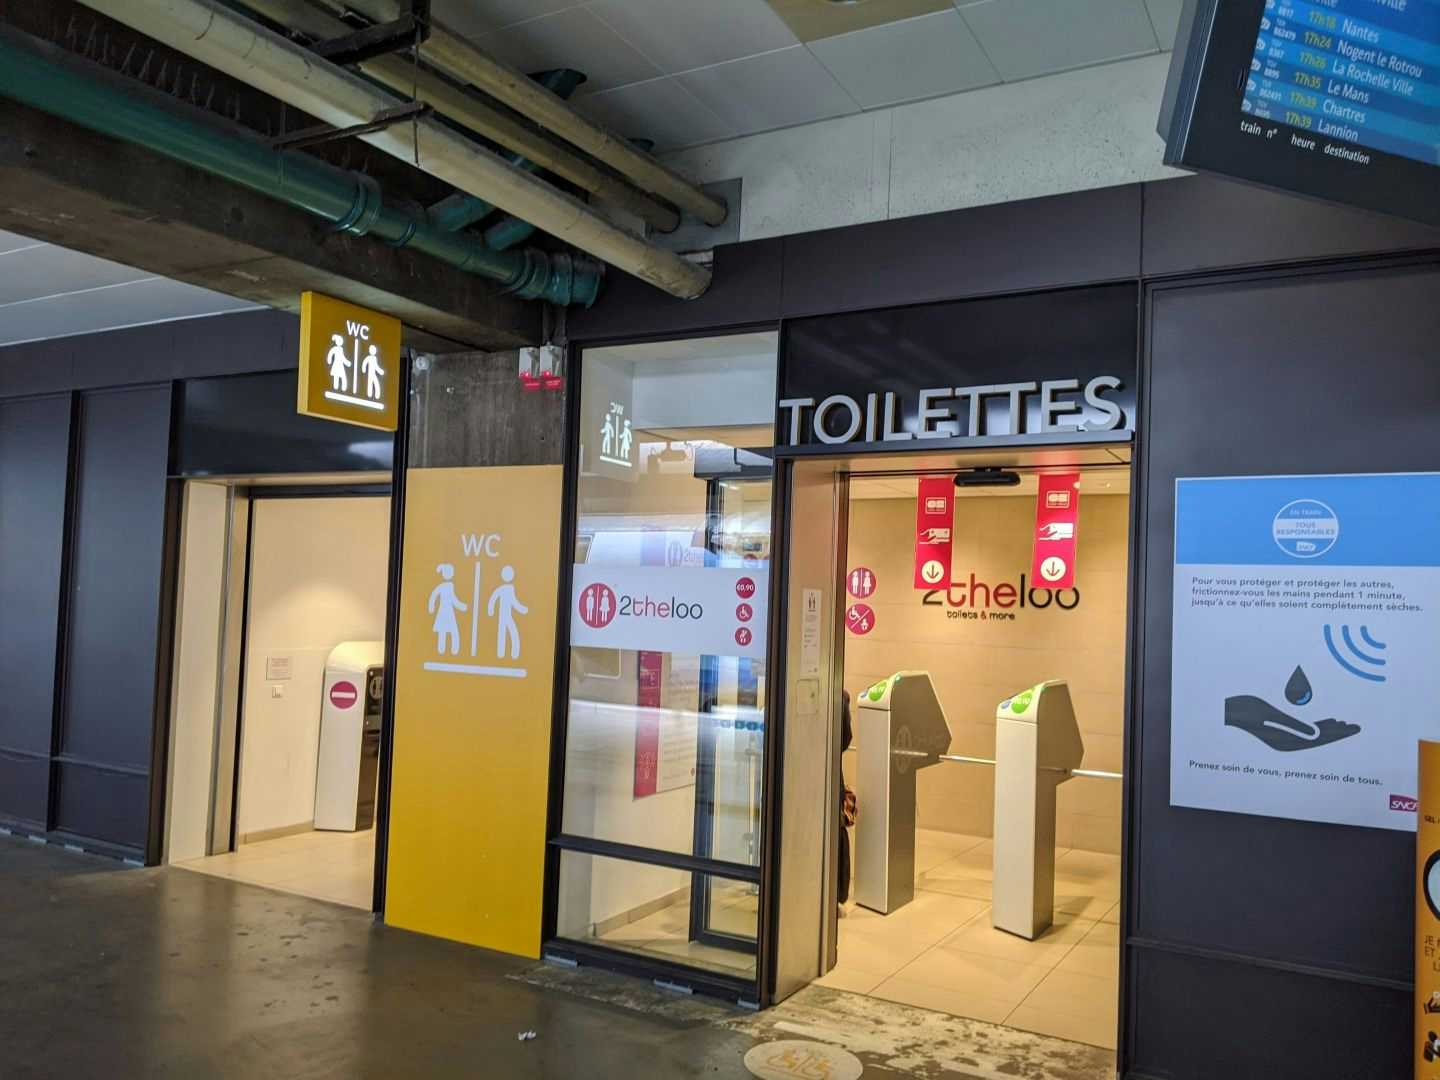 Toilettes publiques à Les toilettes publiques dans les gares bientôt gratuites, annonce la SNCF